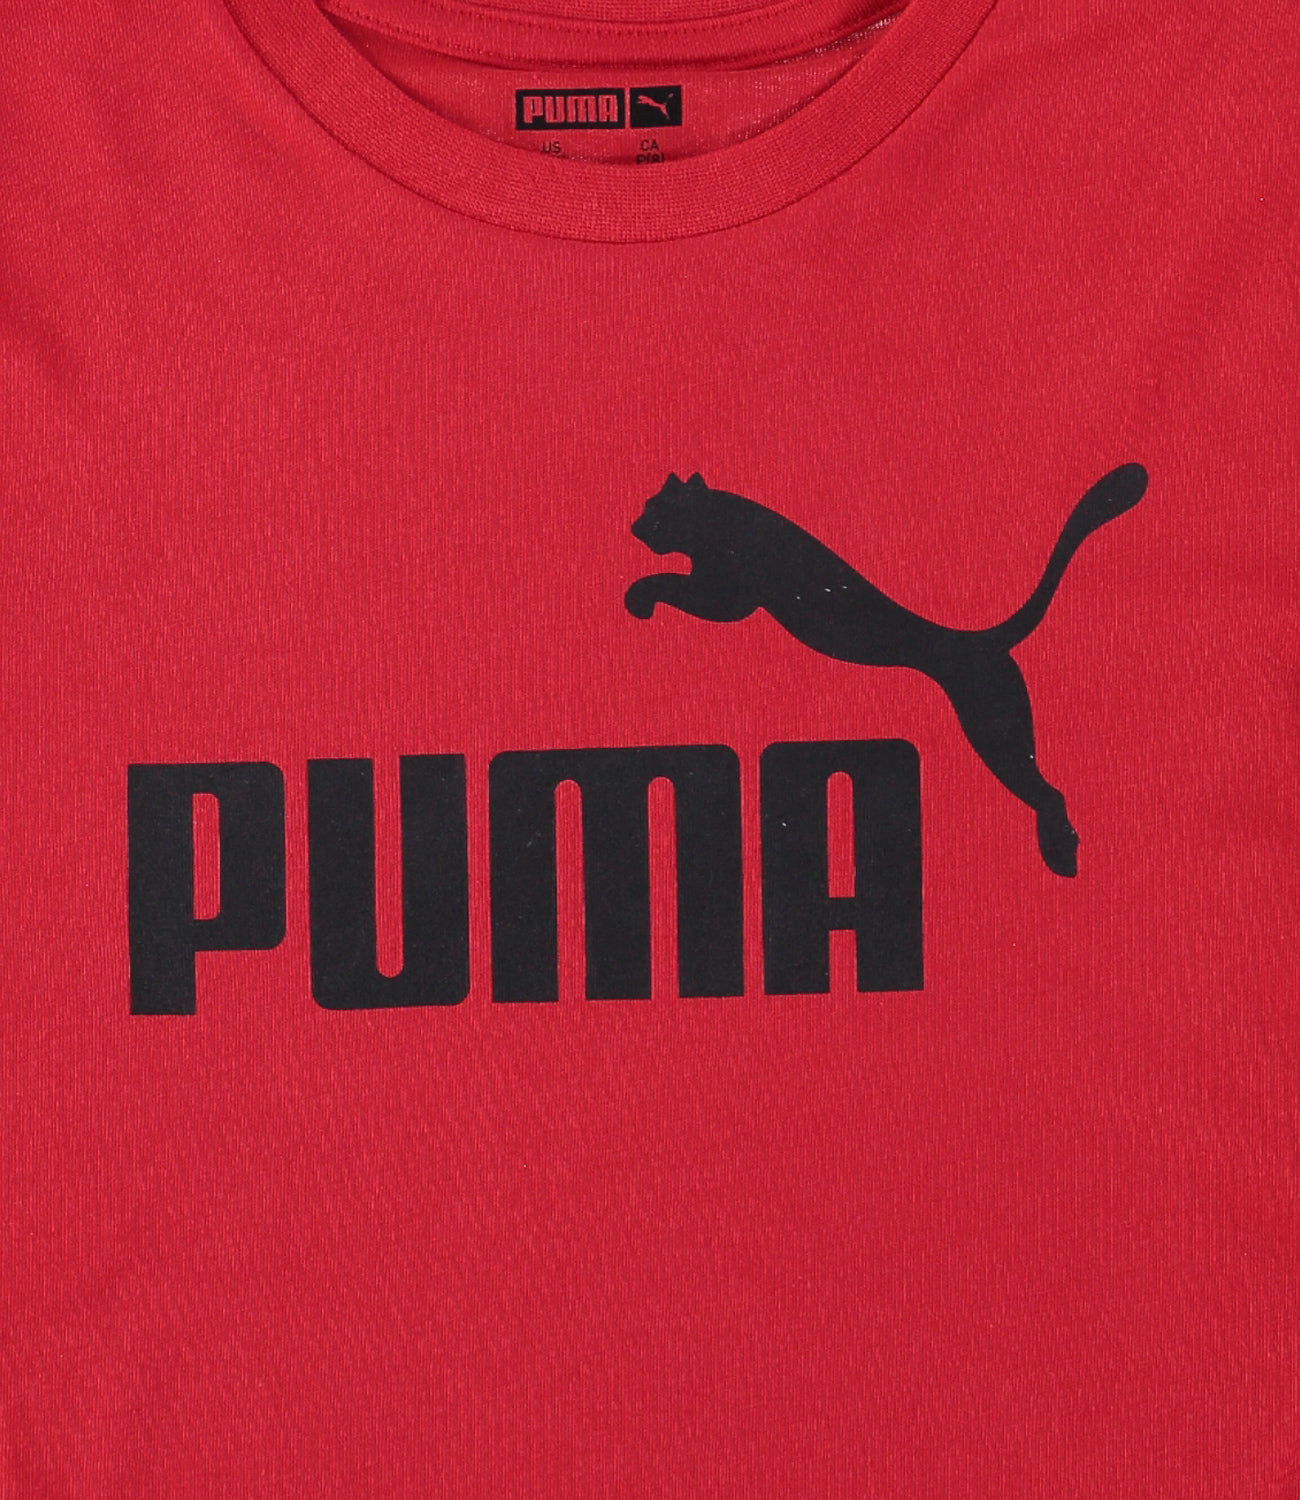 PUMA Boys 8-20 No 1 Logo T-Shirt